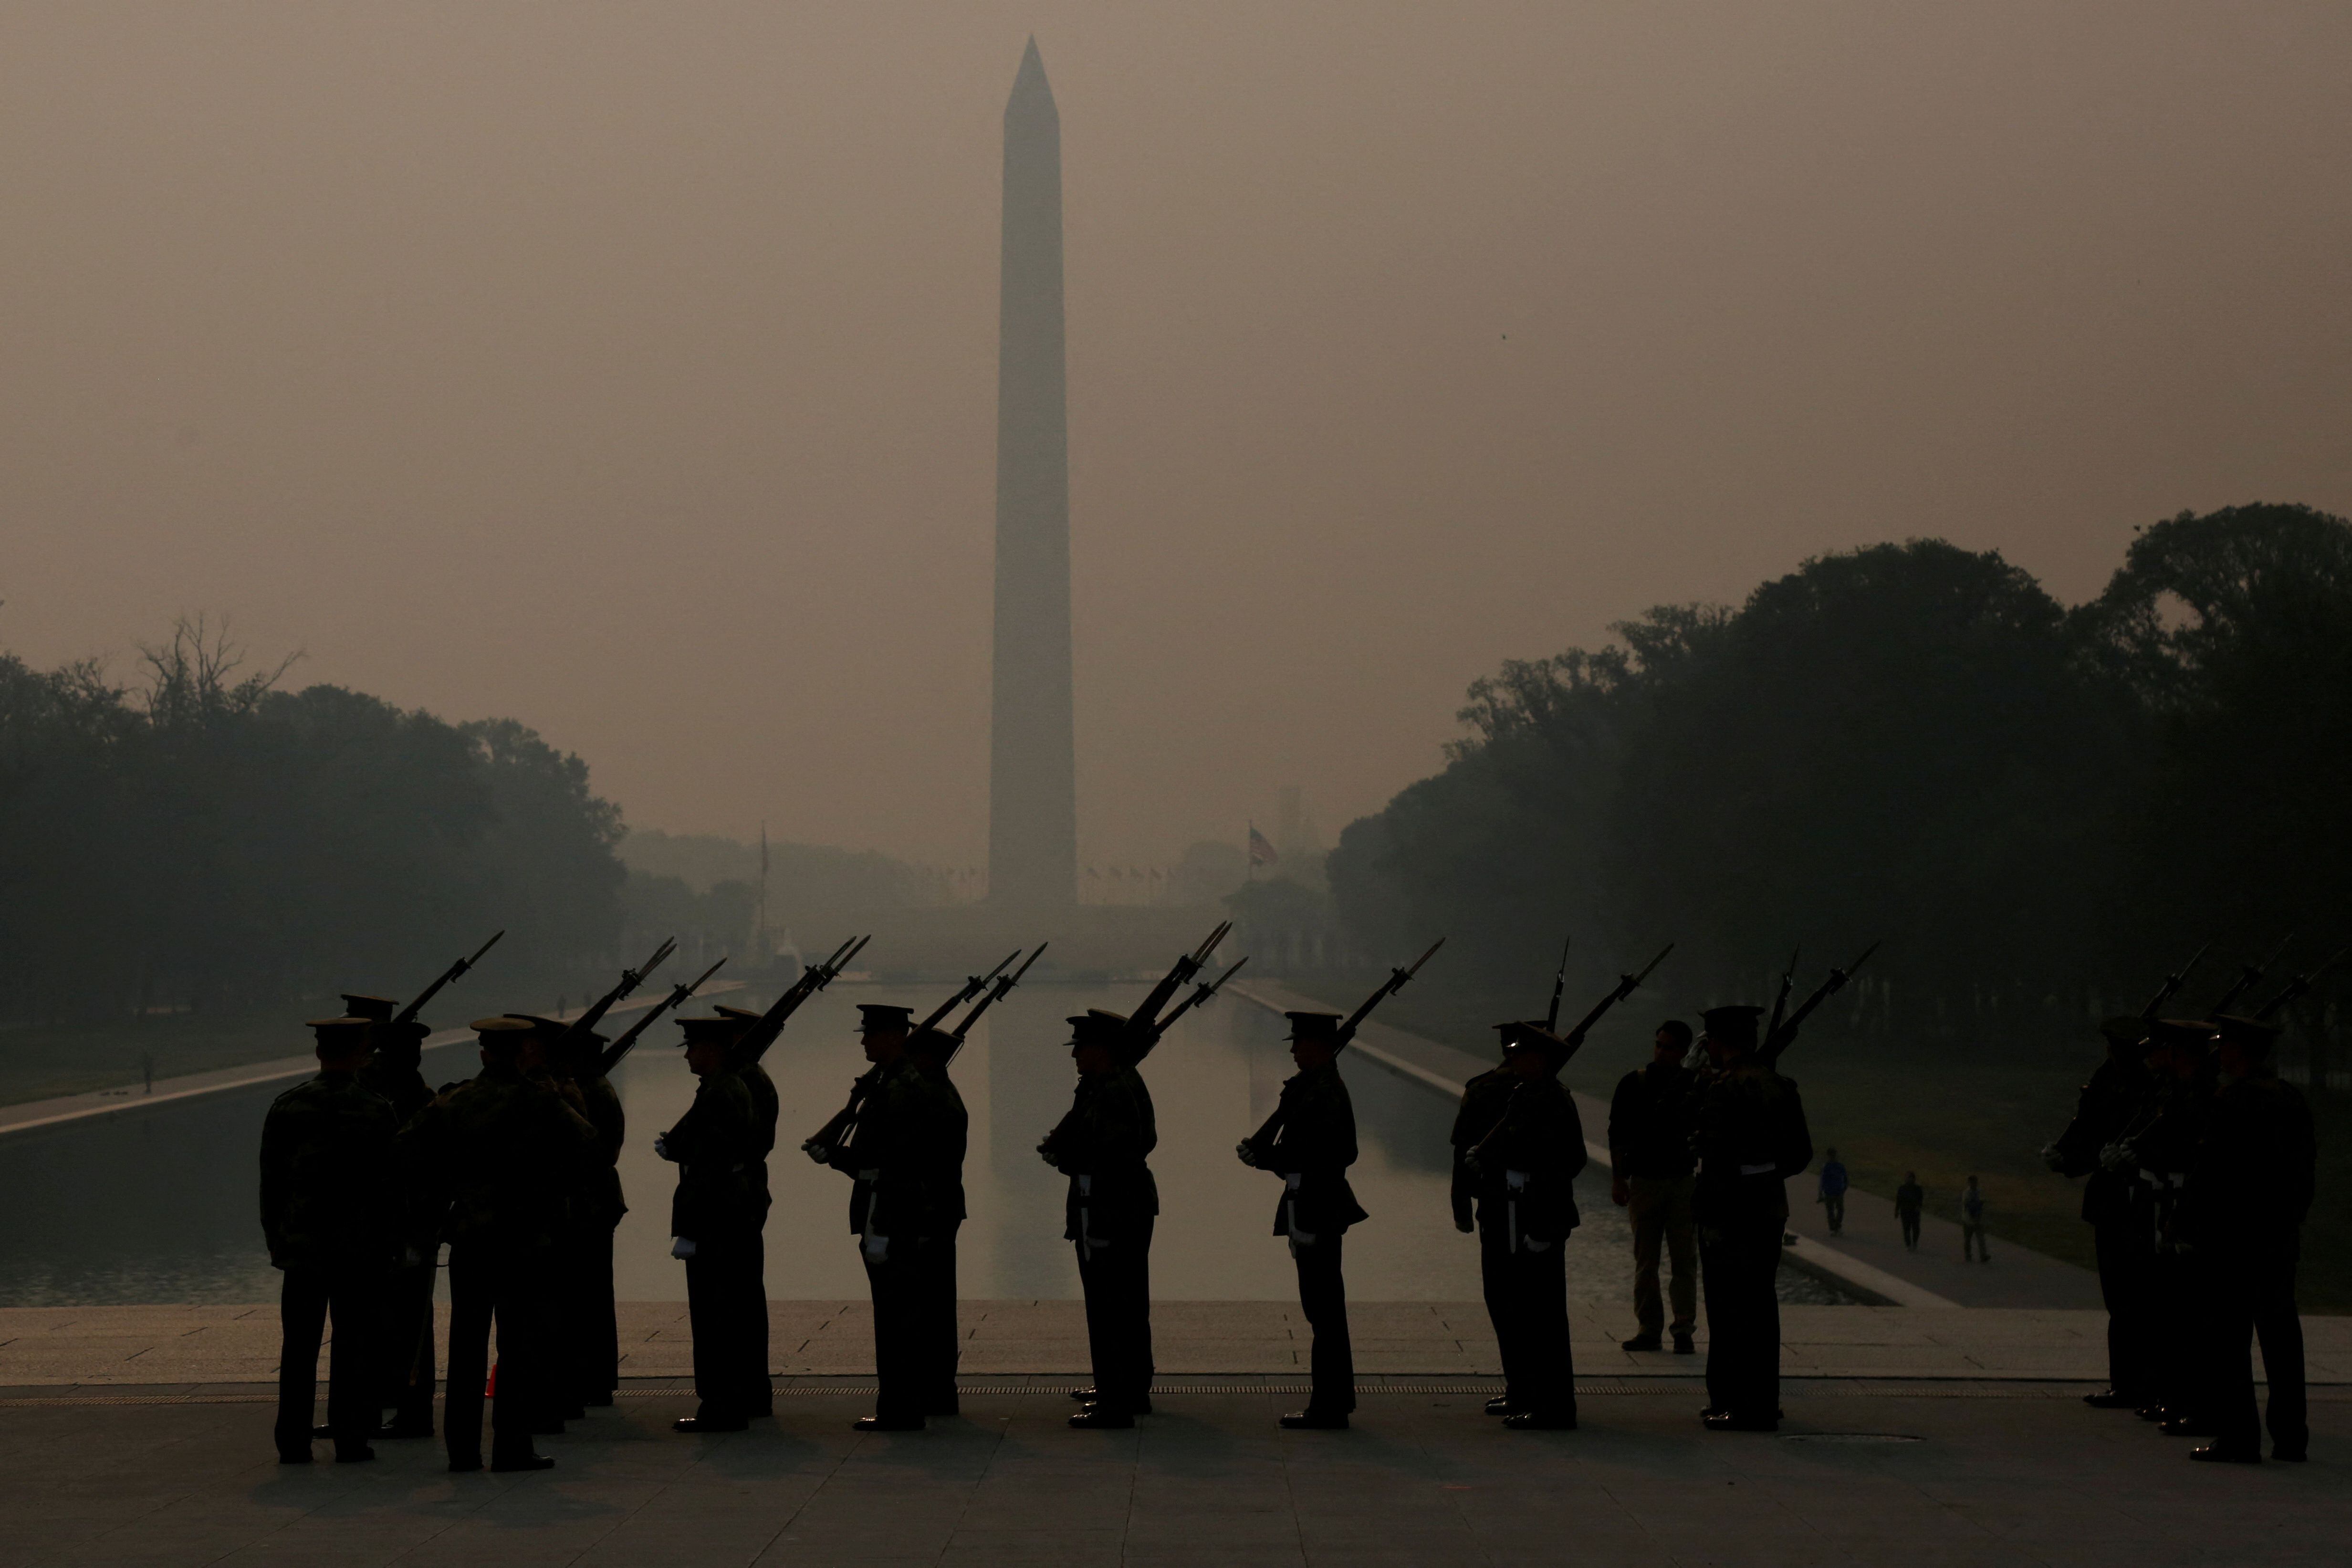 Marines de EE UU ensayan en medio de un manto de neblina y humo causado por incendios forestales en Canadá, este jueves.